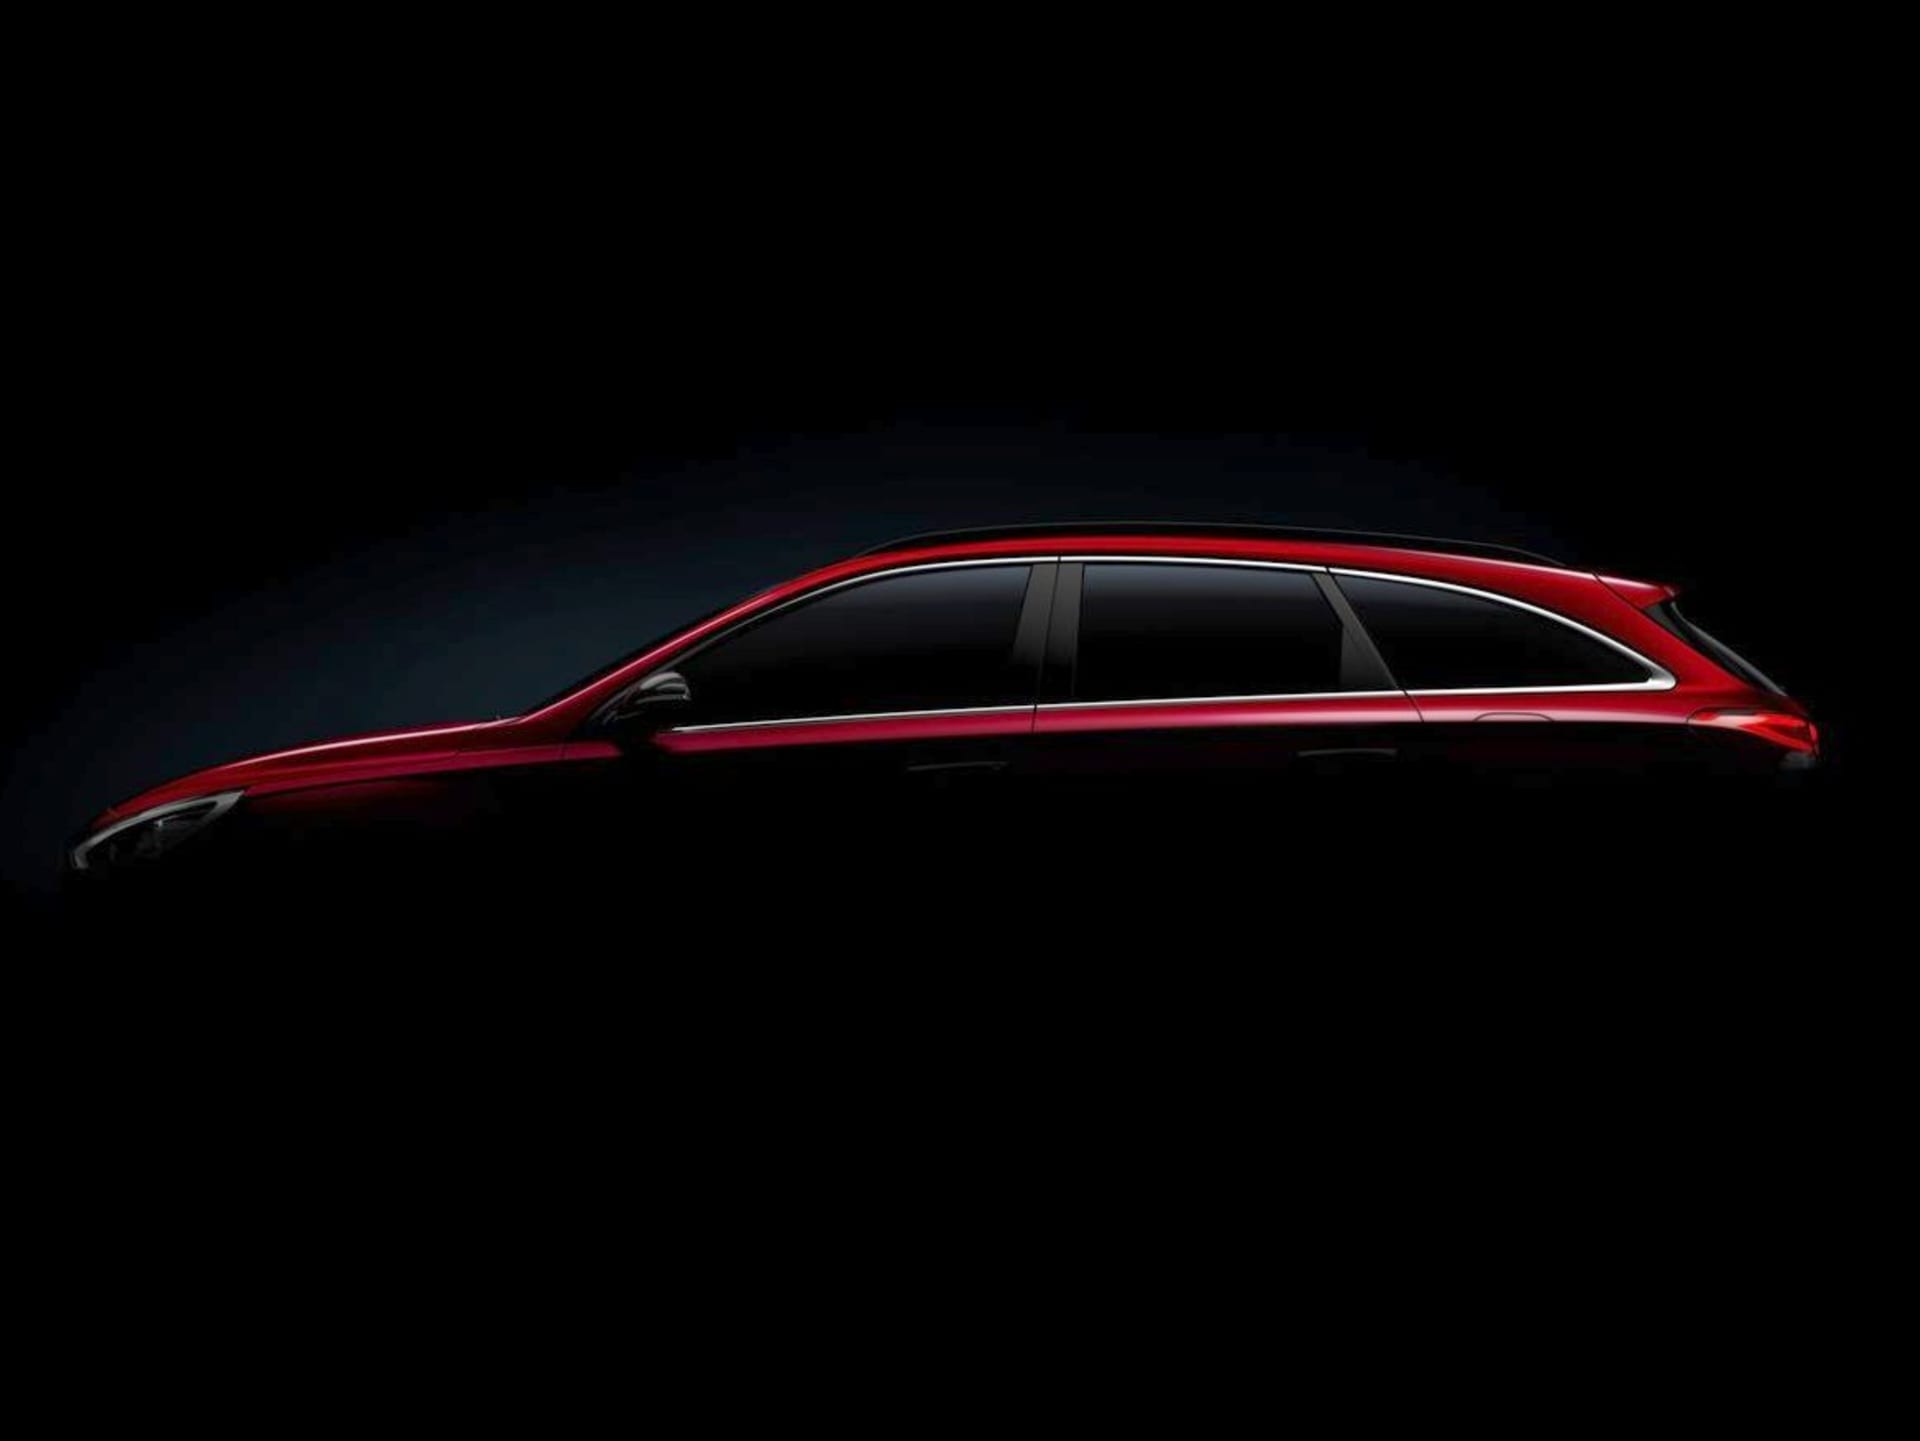 První ukázka toho, jak bude vypadat nové Hyundai i30 kombi